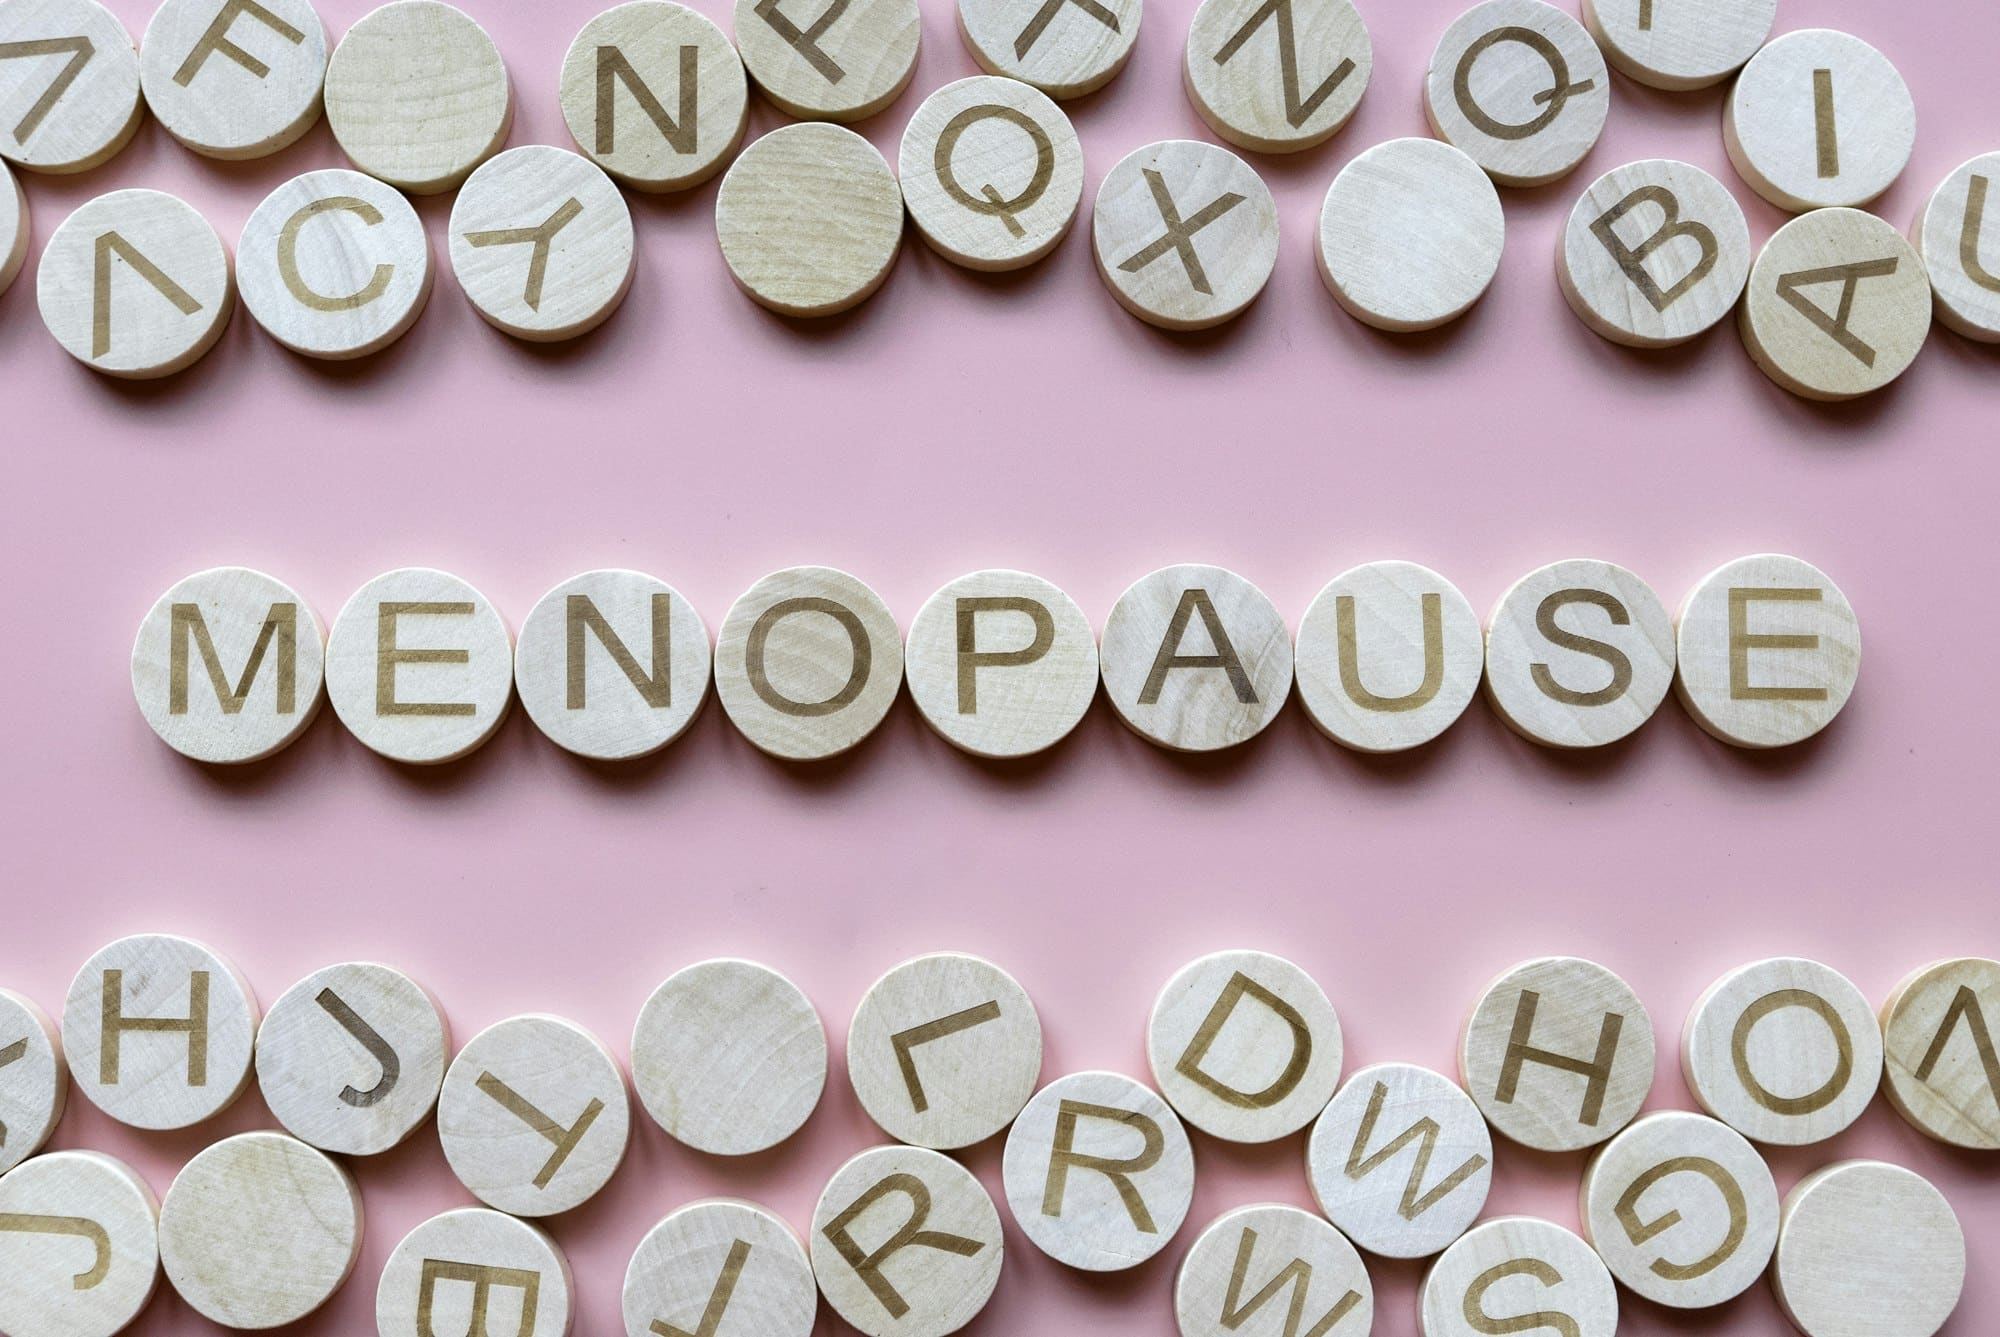 Εμμηνόπαυση: Τα συμπτώματα από τα 40 μέχρι τα 65